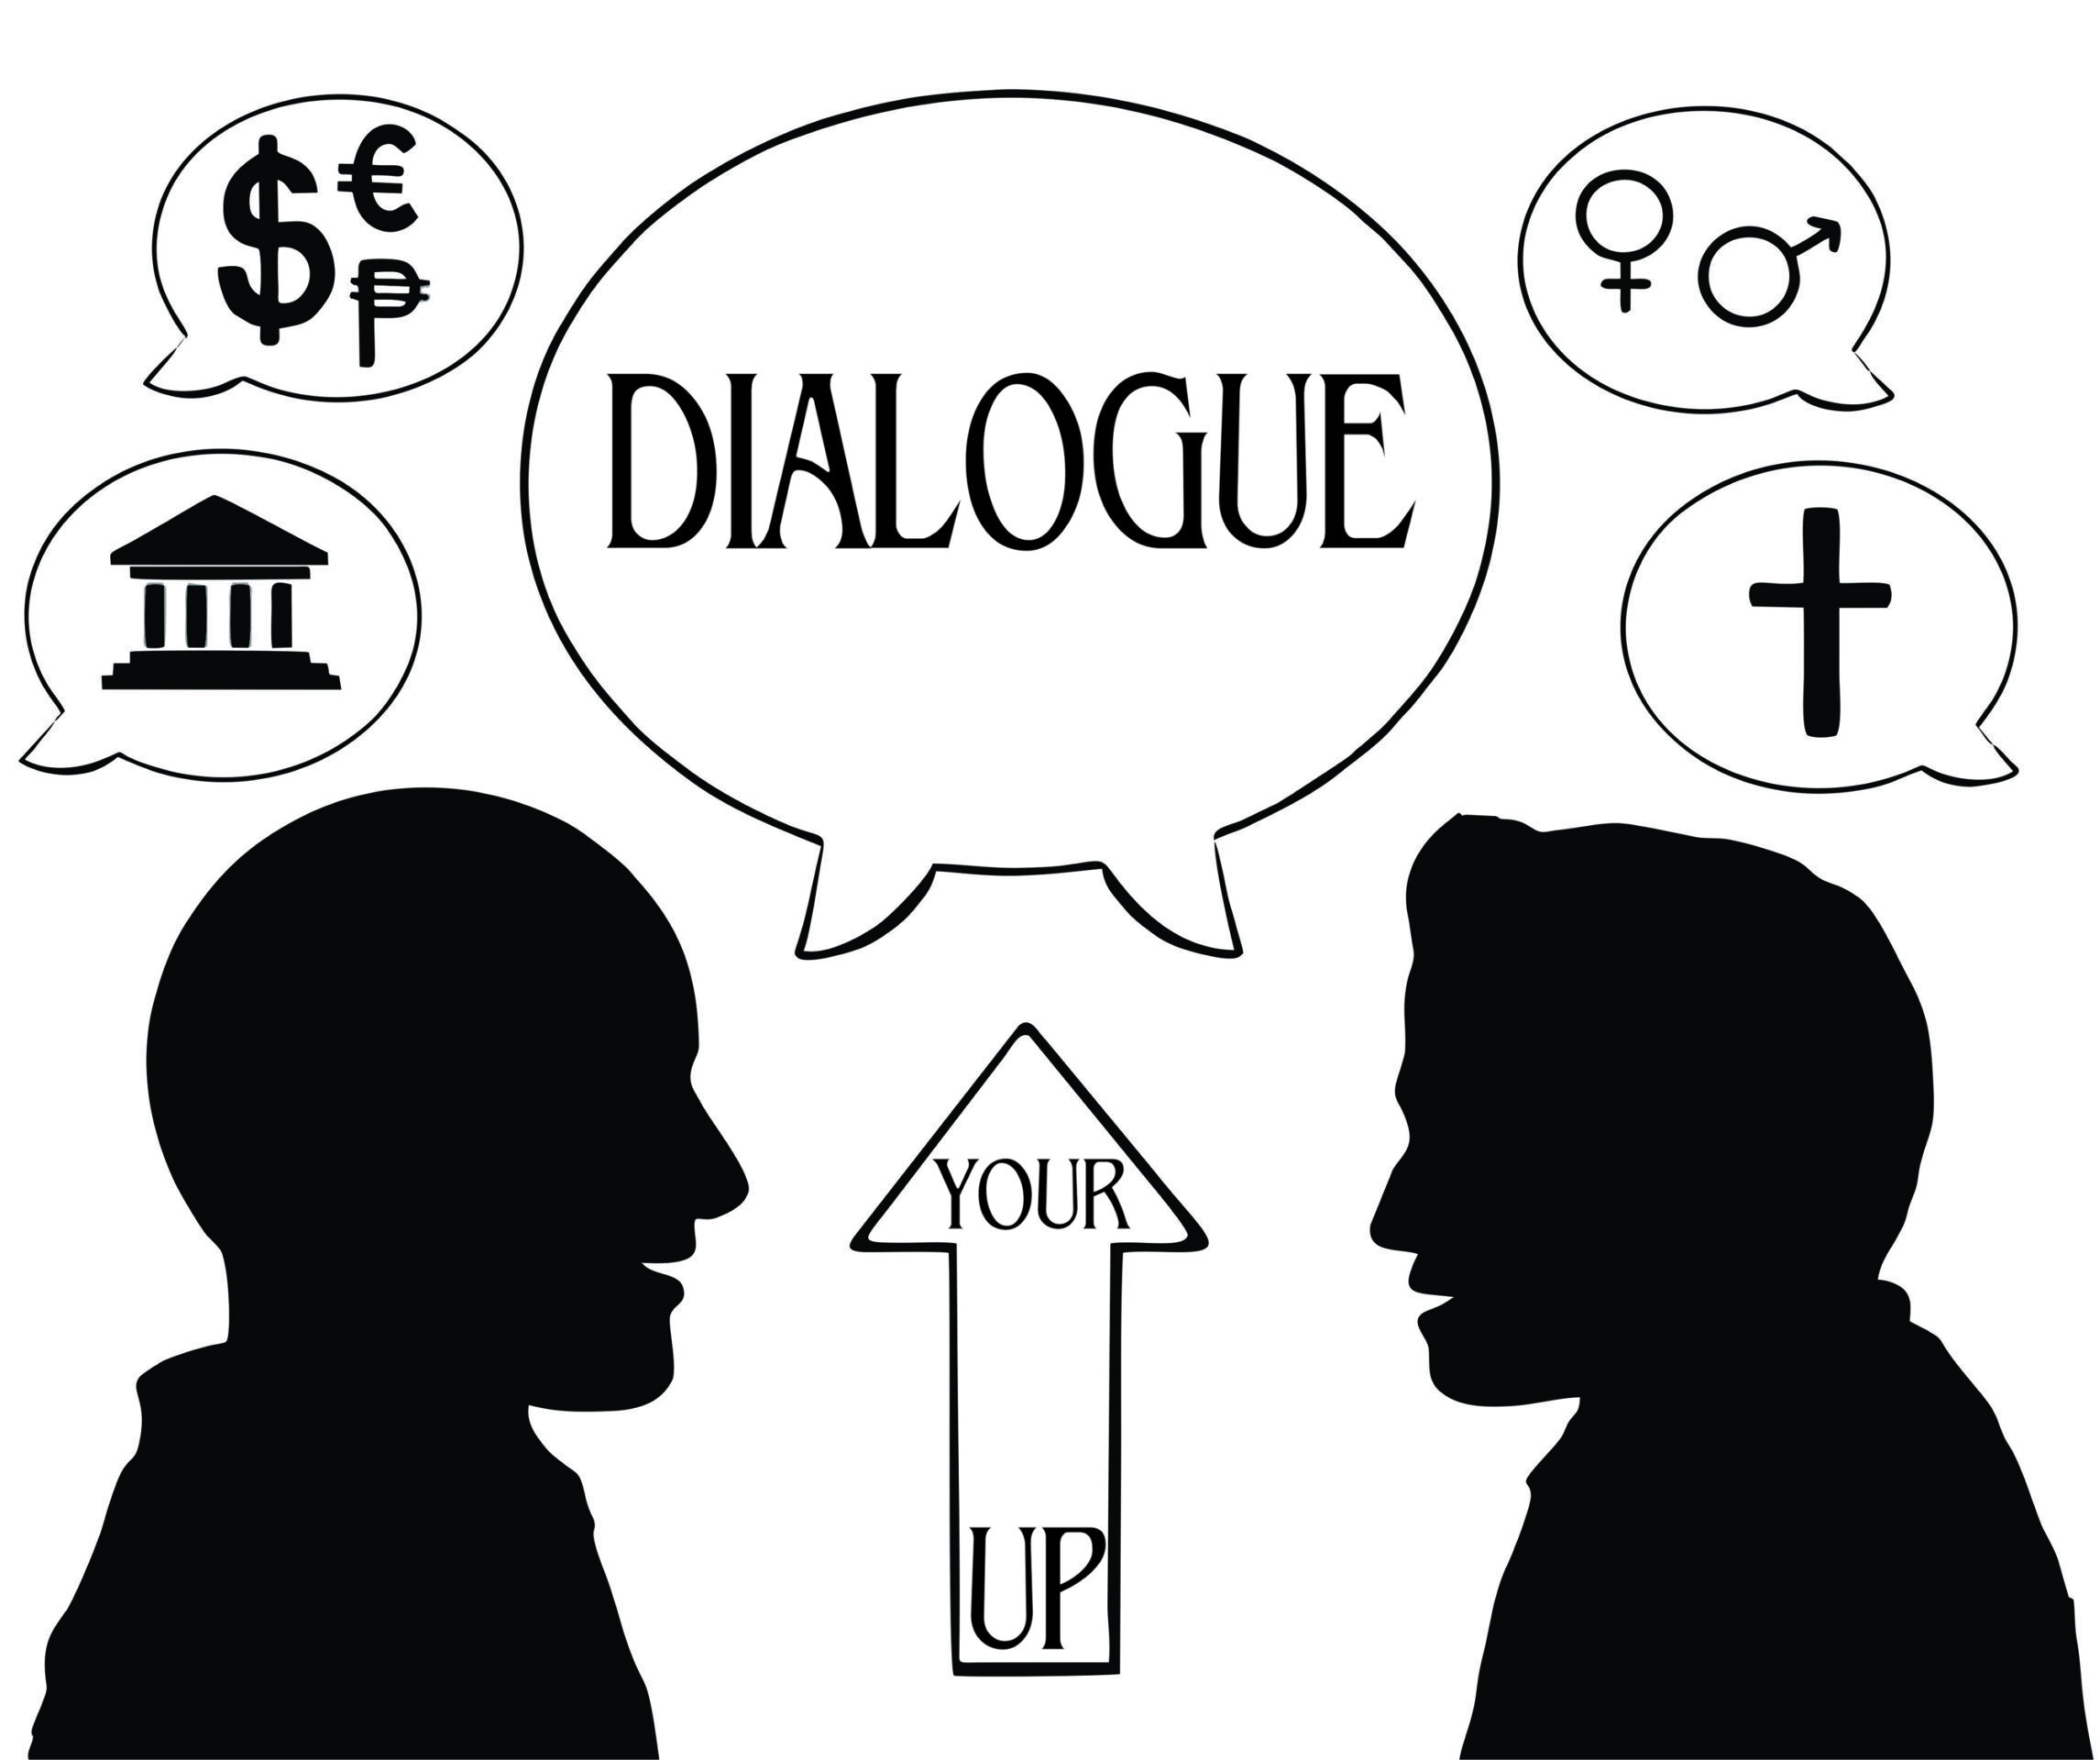 Up Your Dialogue